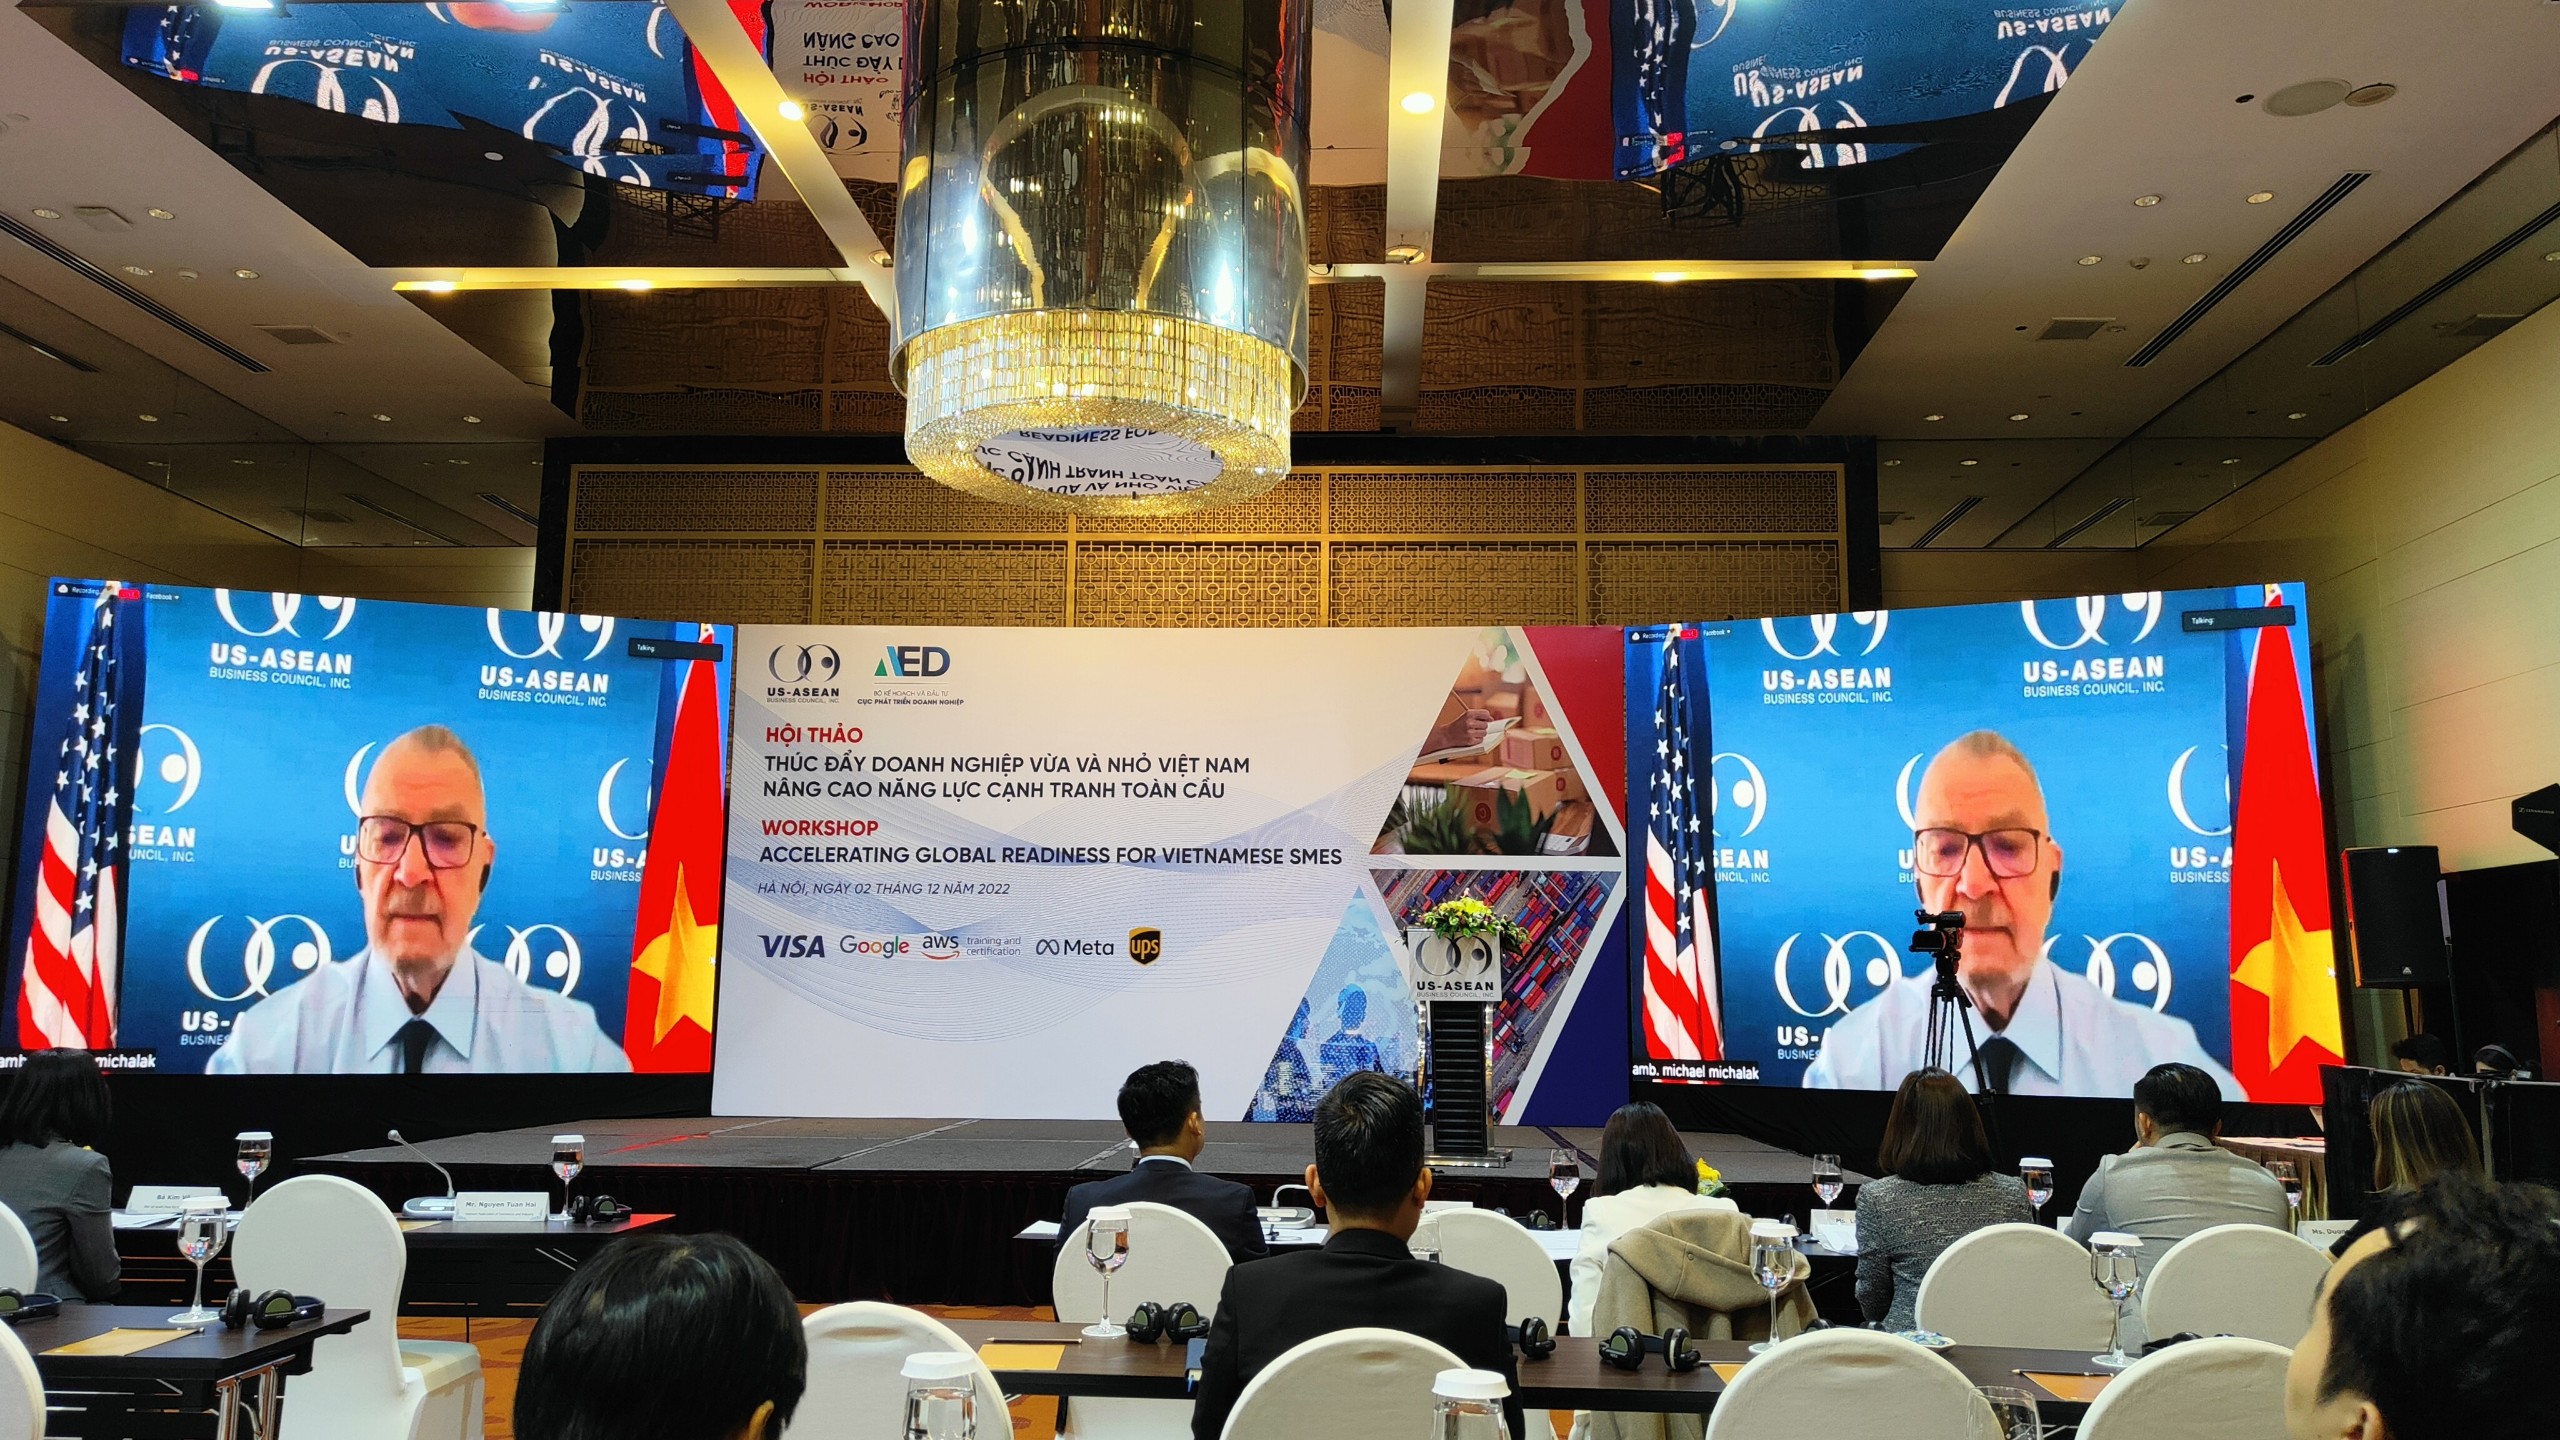 Hội thảo thúc đẩy doanh nghiệp vừa và nhỏ Việt Nam nâng cao năng lực cạnh tranh toàn cầu